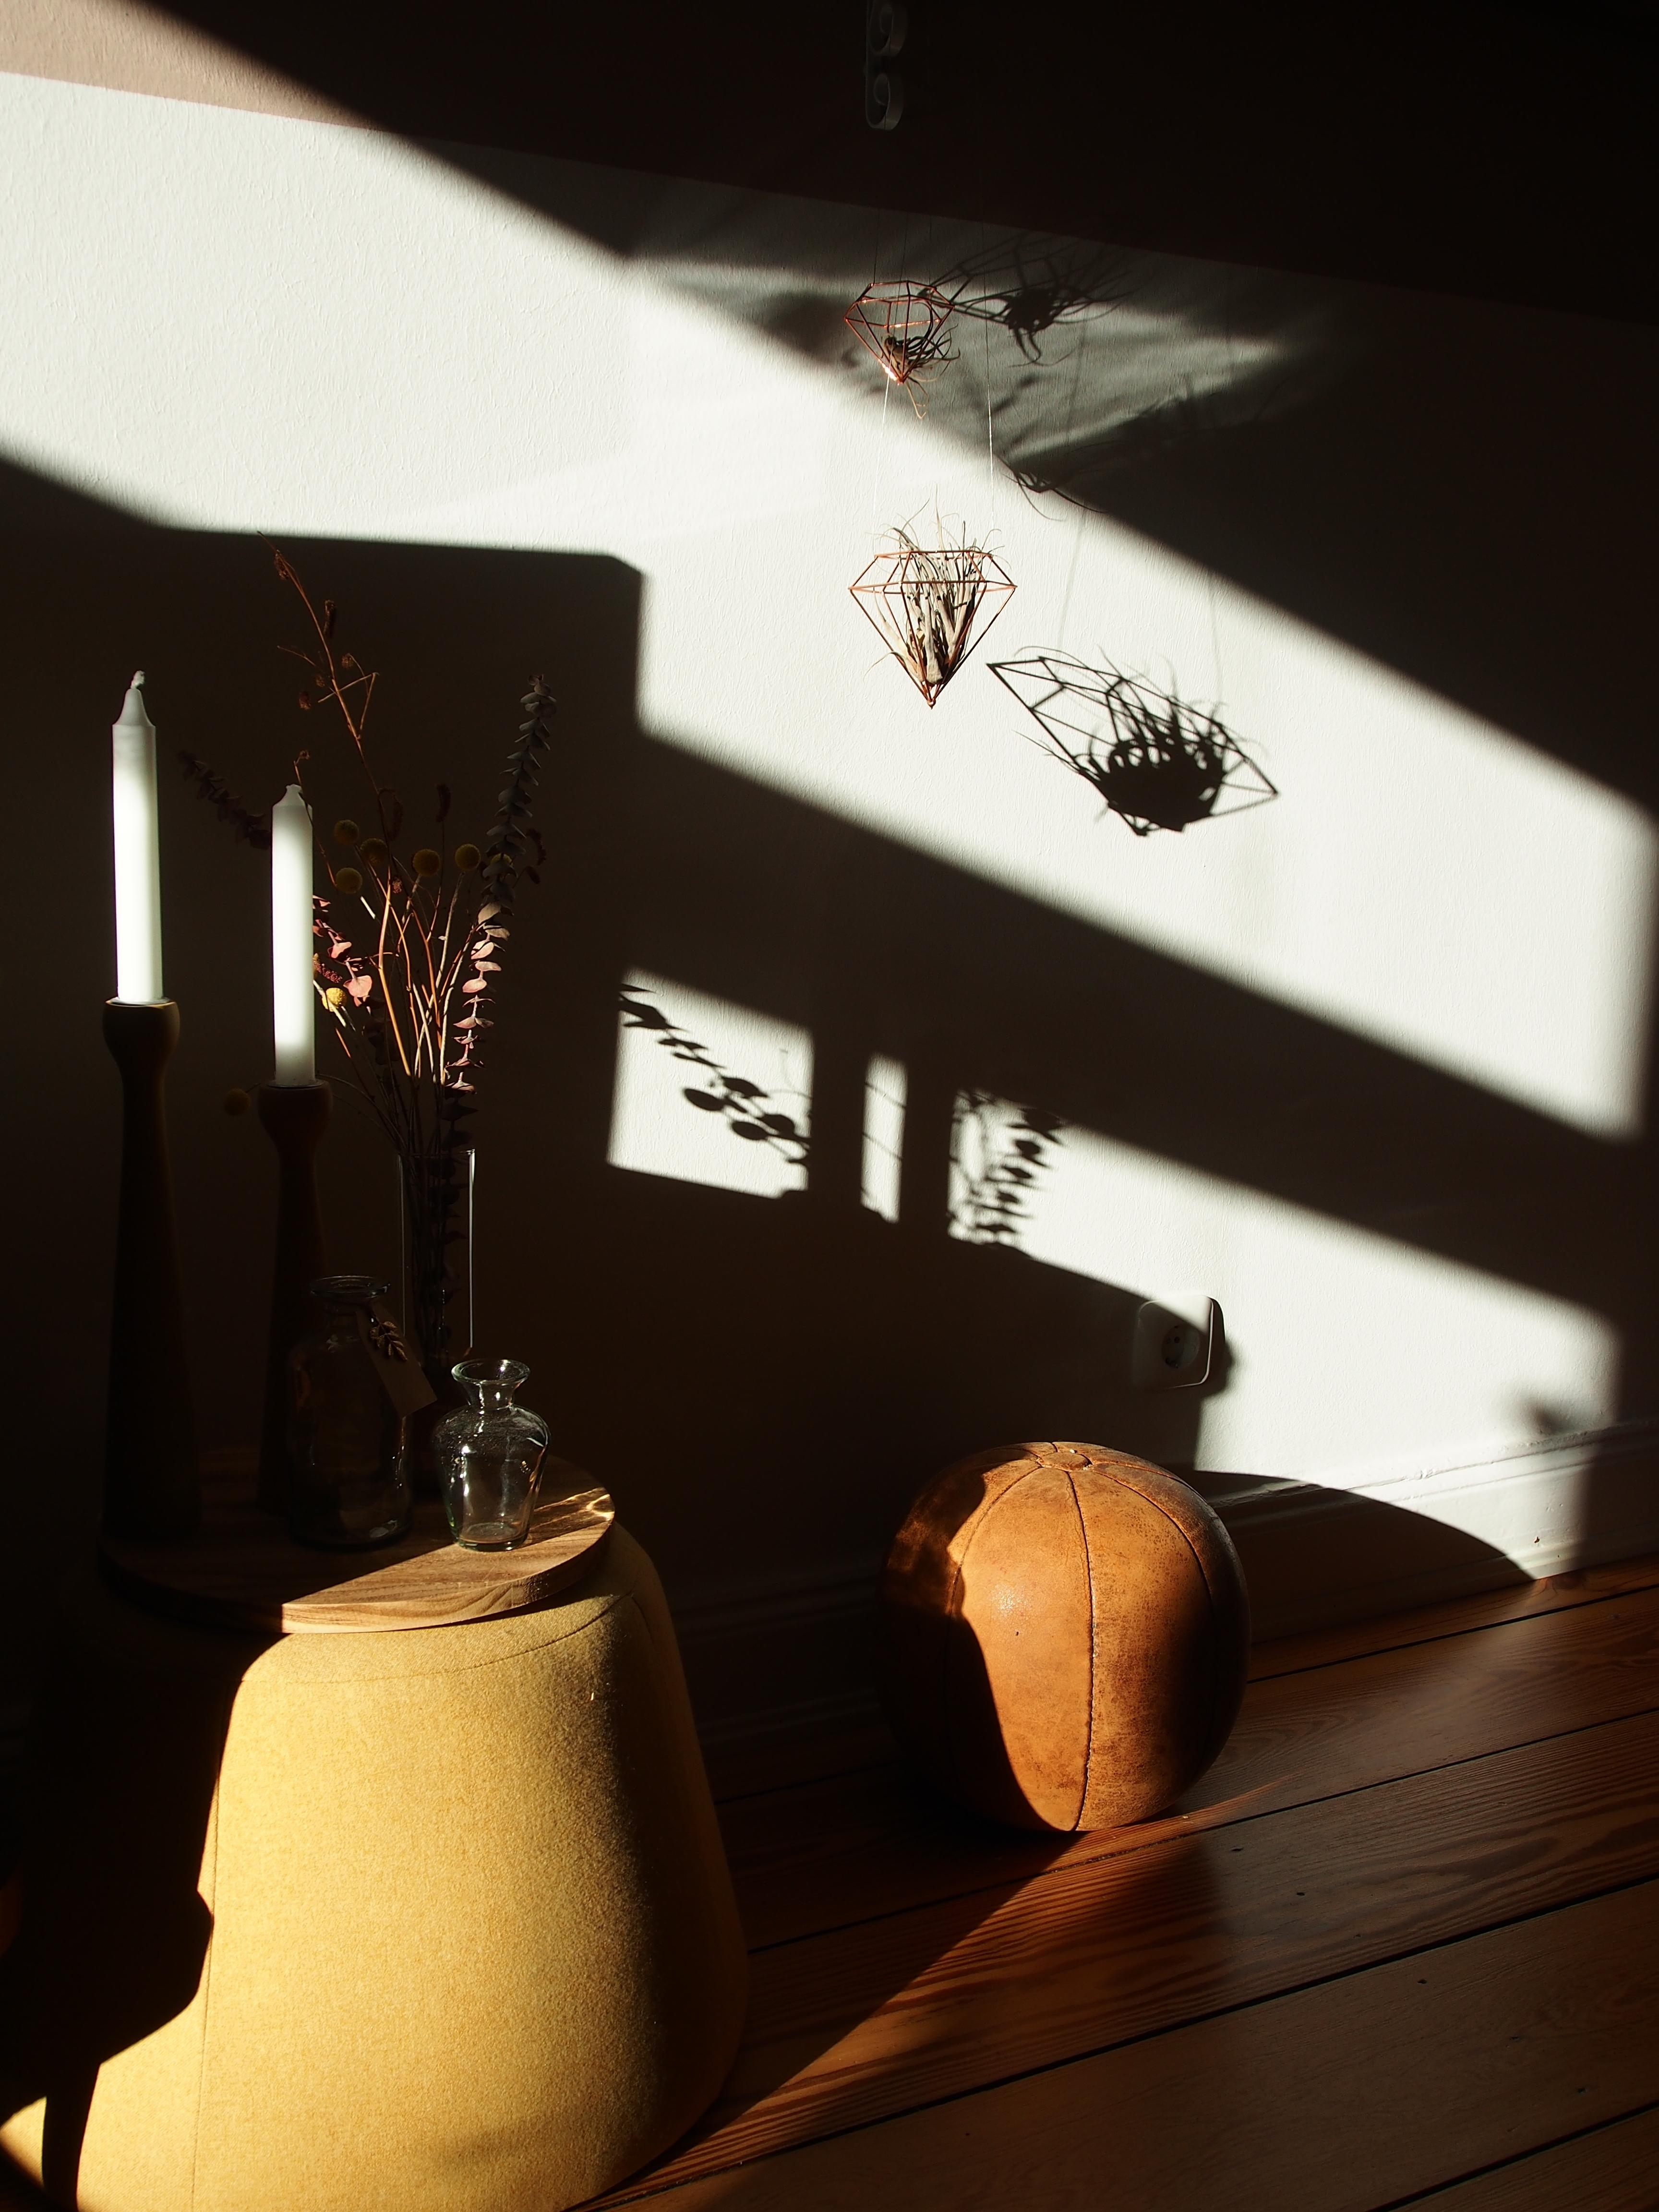 Heute morgen hat mich dieses zauberhafte Licht- und Schattenspiel im #Wohnzimmer erwartet! 
#Altbau #sunshine #vintage